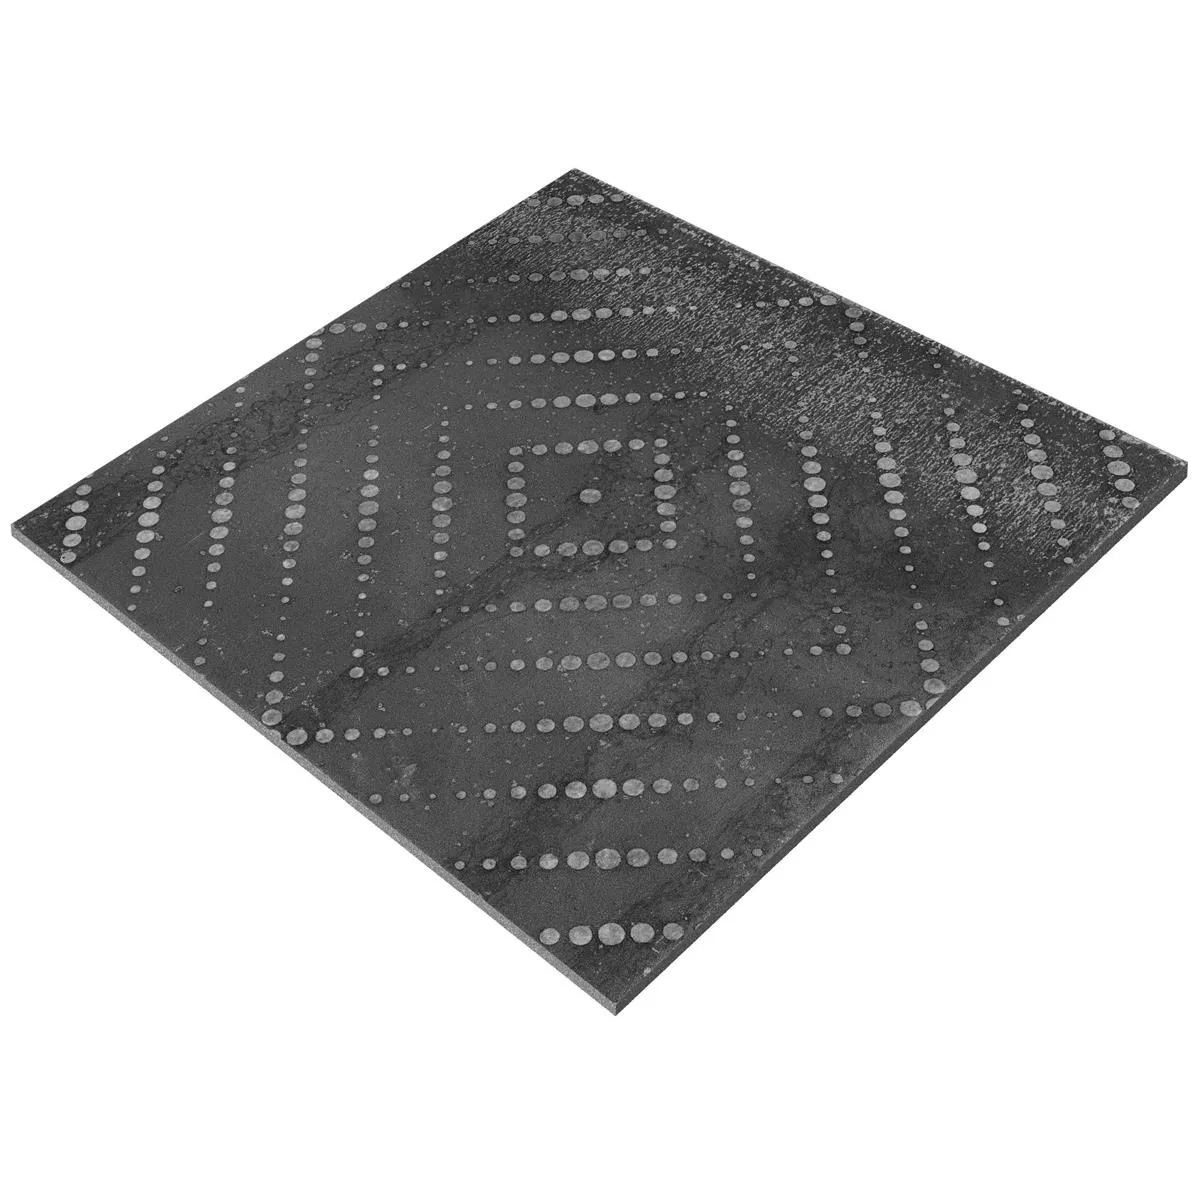 Πλακάκια Δαπέδου Chicago Μεταλλική Εμφάνιση Ανθρακίτης R9 - 18,5x18,5cm Pattern 3